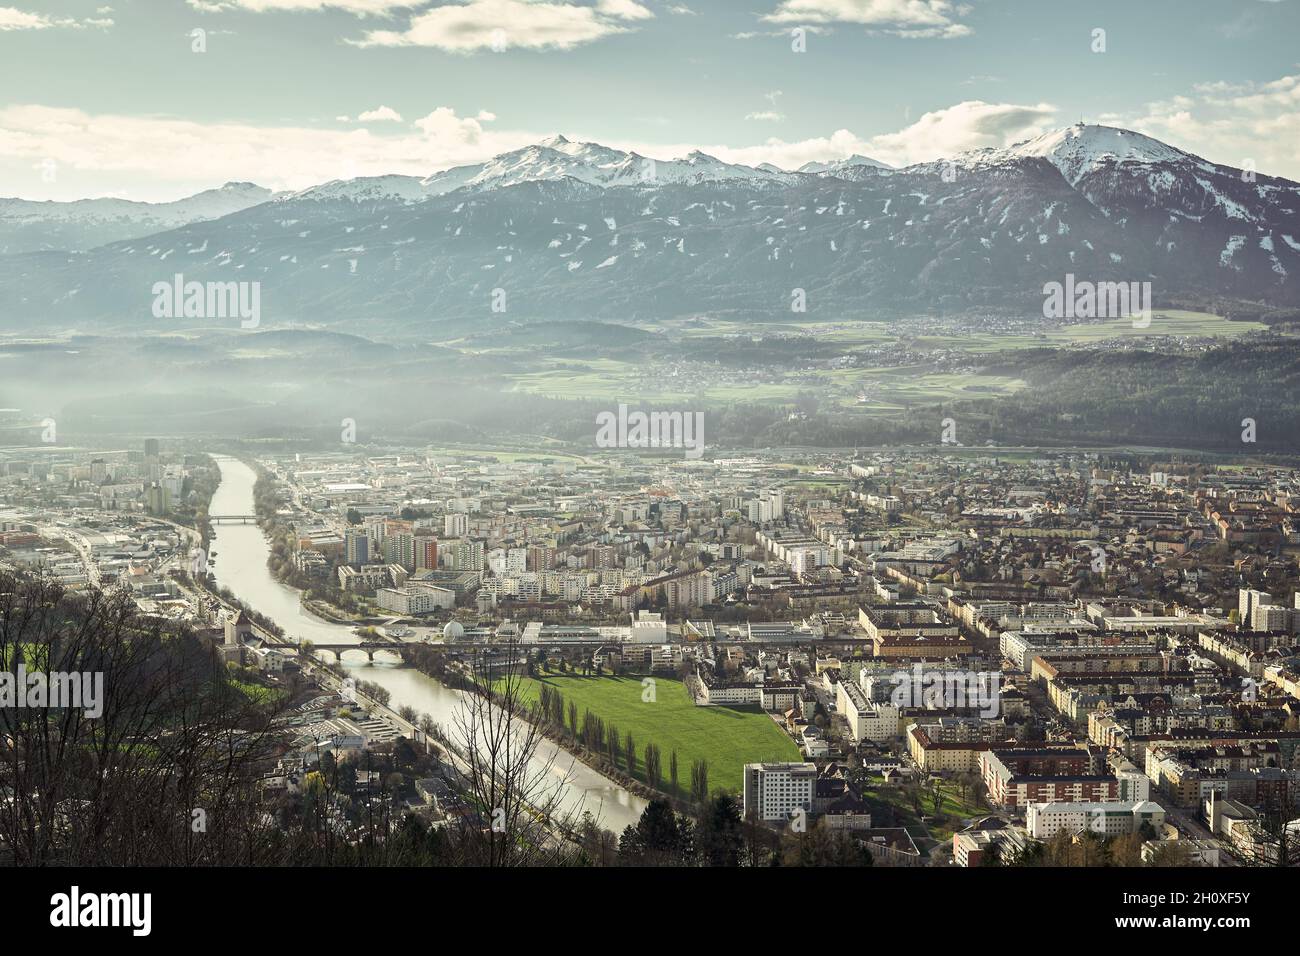 Una vista sulla città di Innsbruck, accanto al fiume Inn, con una grande montagna, il Patscherkofel, sullo sfondo Foto Stock